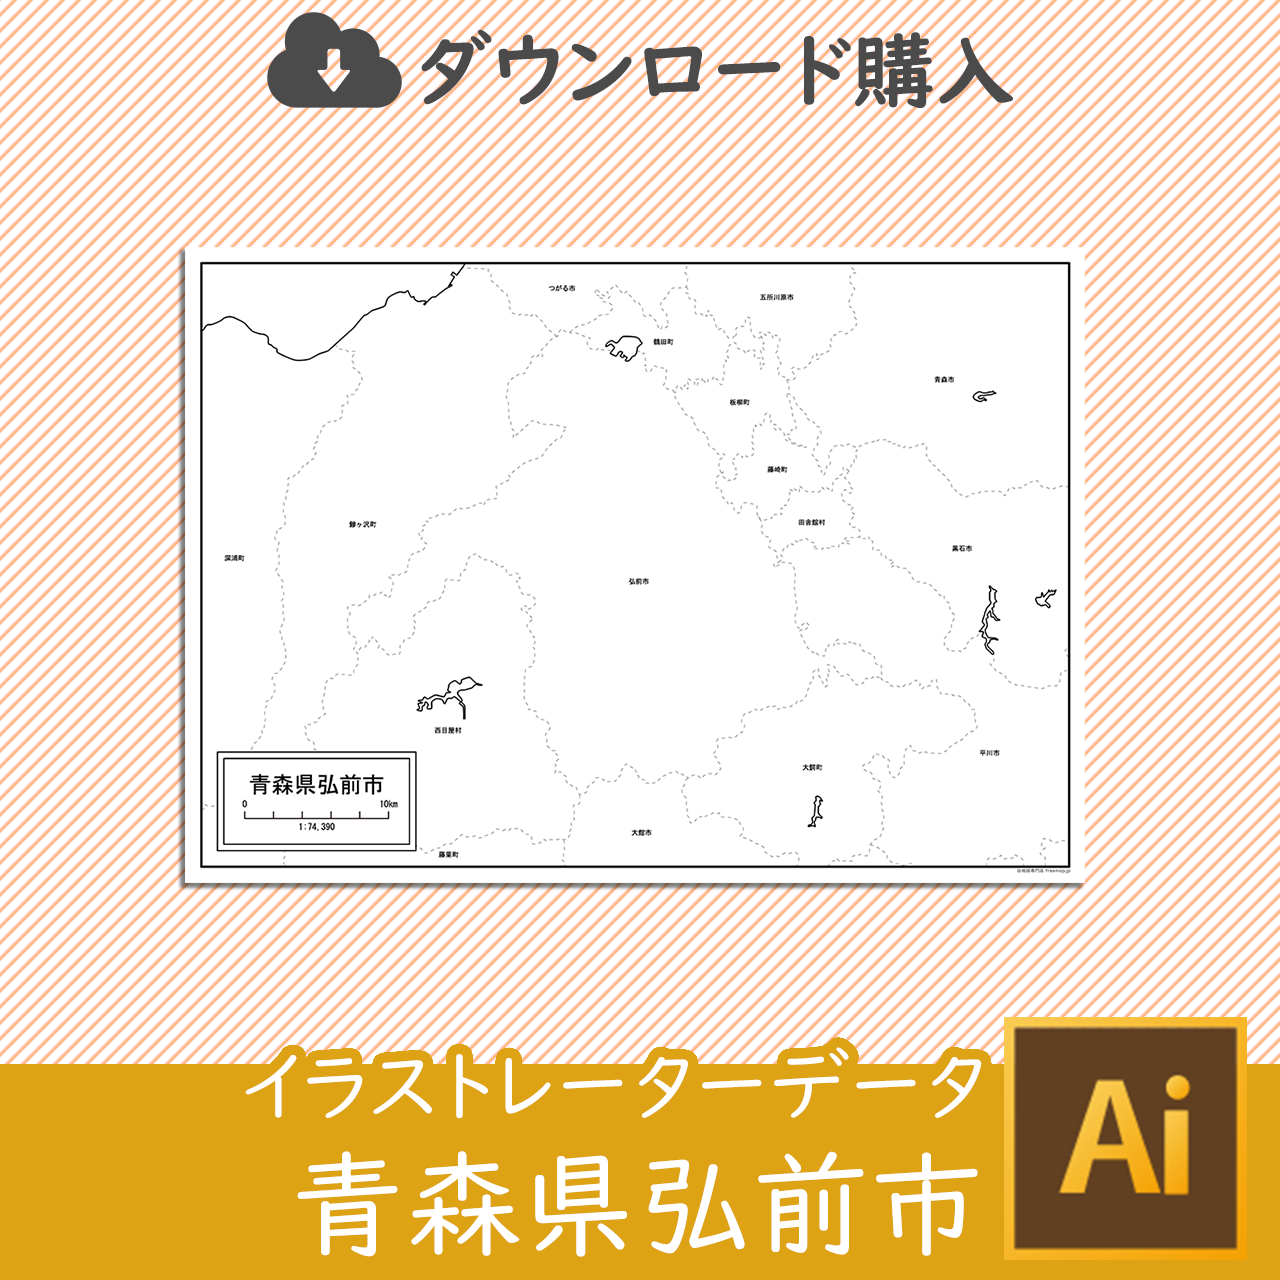 弘前市のaiデータのサムネイル画像